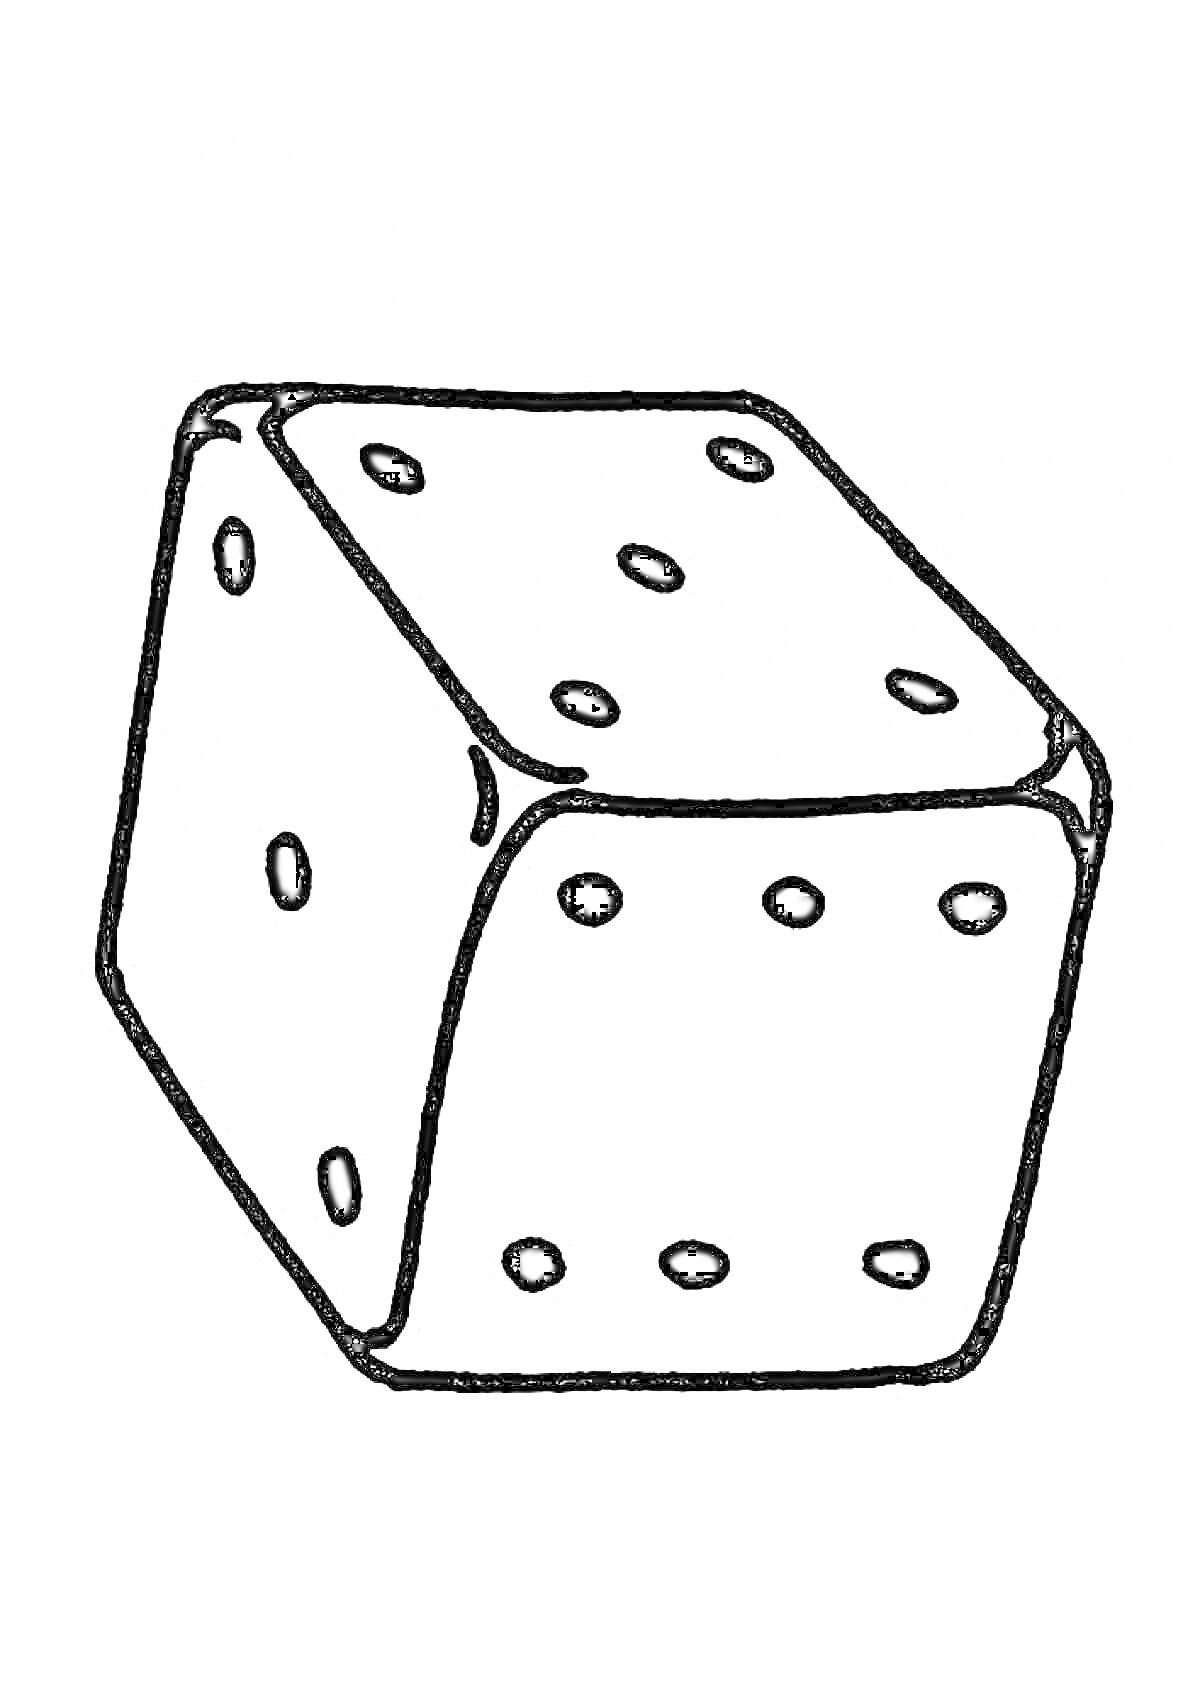 Раскраска Кубик с цифрами от 1 до 6 на всех гранях